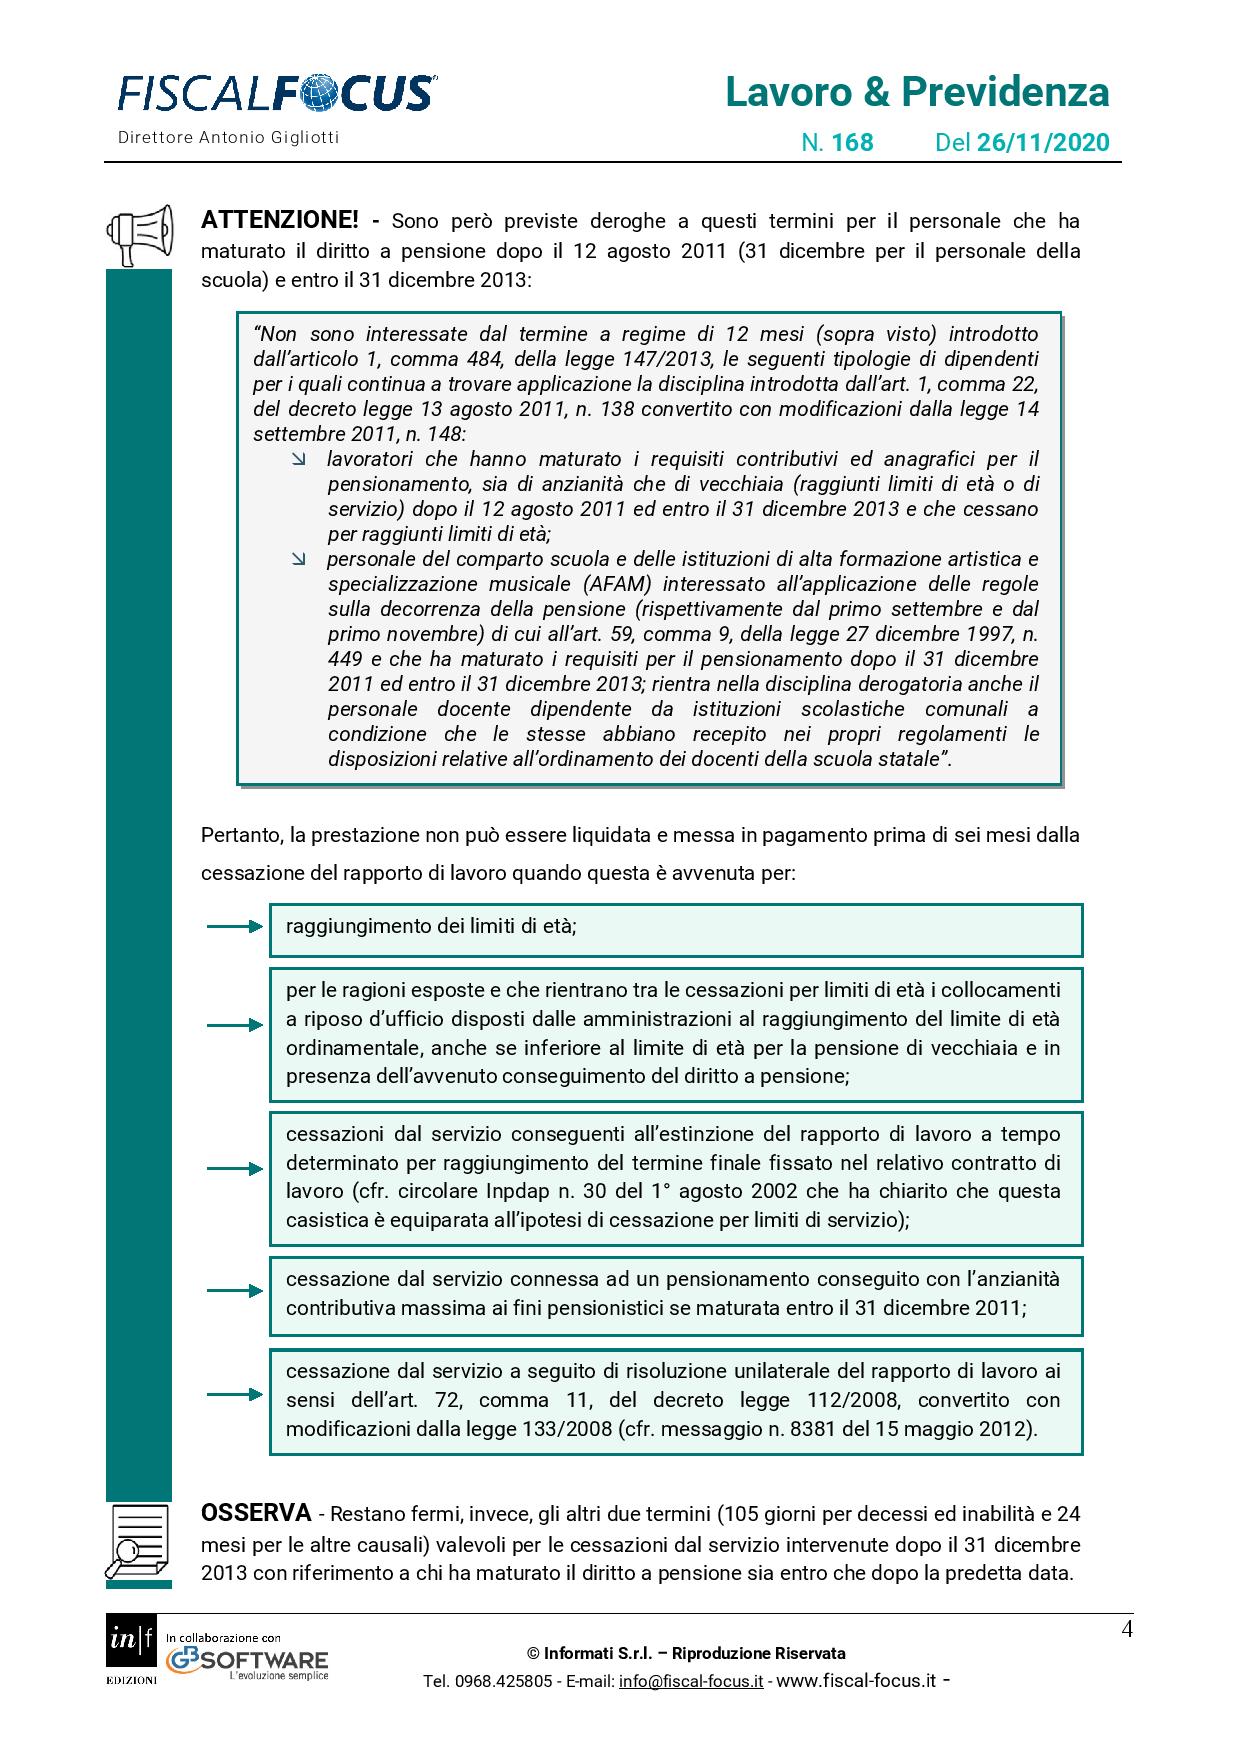 Lavoro e Previdenza n. 168 del 26.11.2020 TFS dipendenti pubblici page 004